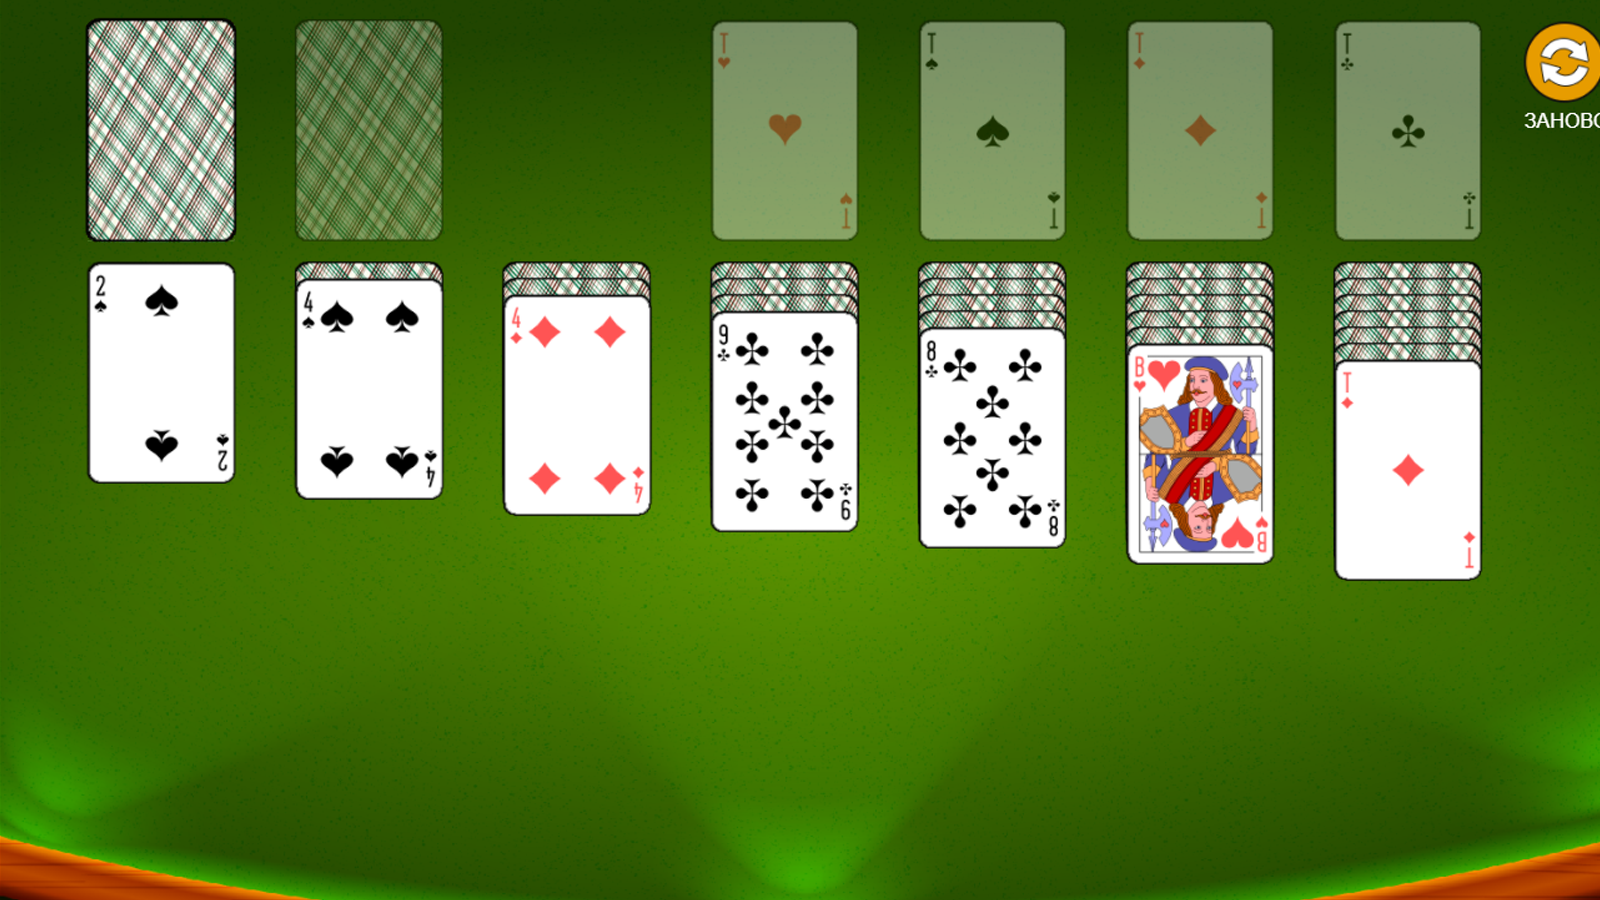 игра солитер играть бесплатно онлайн сейчас по 3 карты